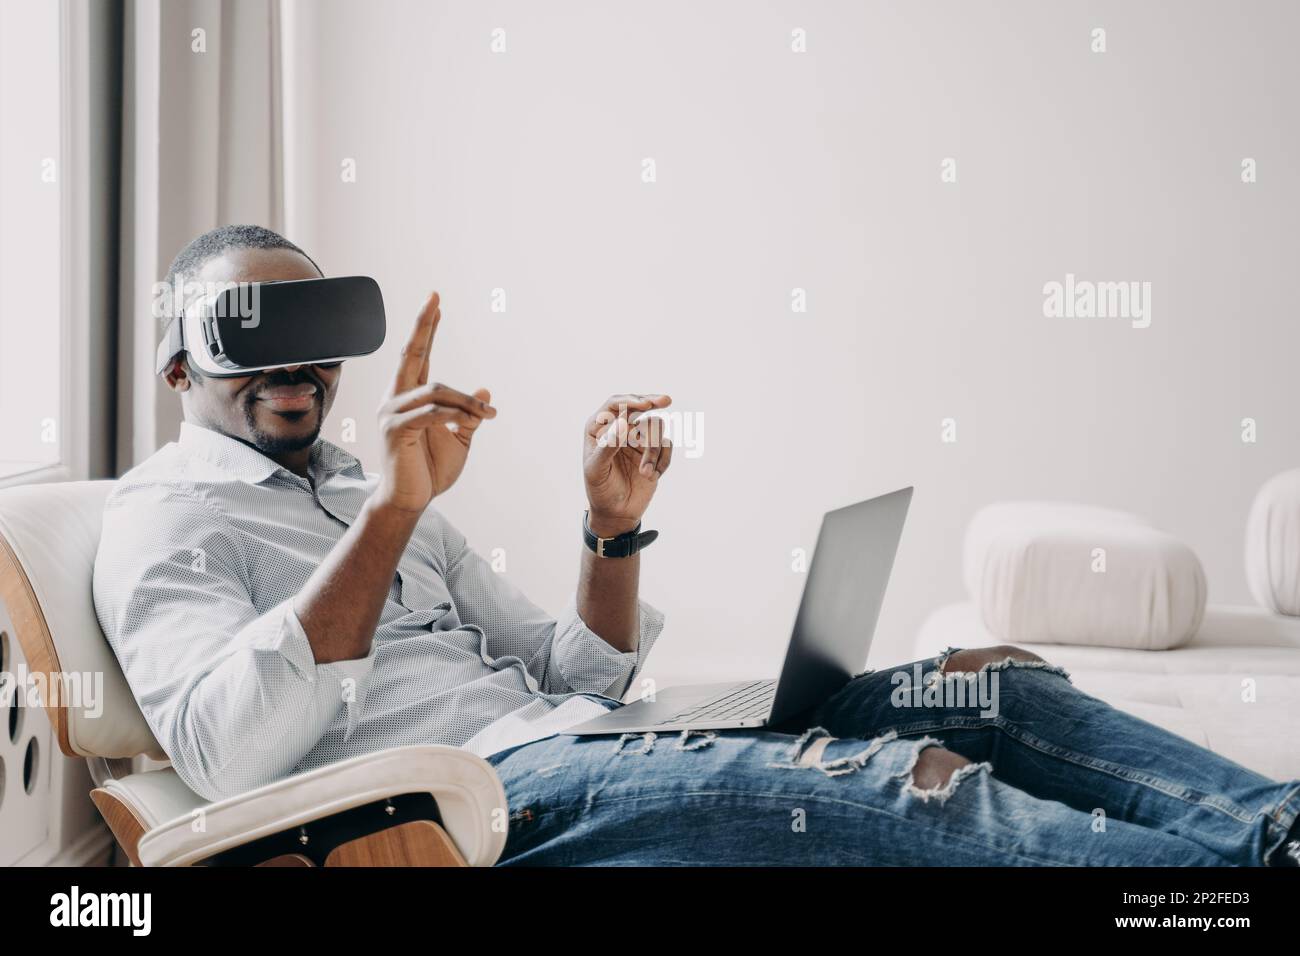 L'homme afro-américain en lunettes vr travaille chez lui. Un homme d'affaires décontracté clique sur des boutons virtuels. Travail à distance et jeux futuristes. Numérique moderne Banque D'Images